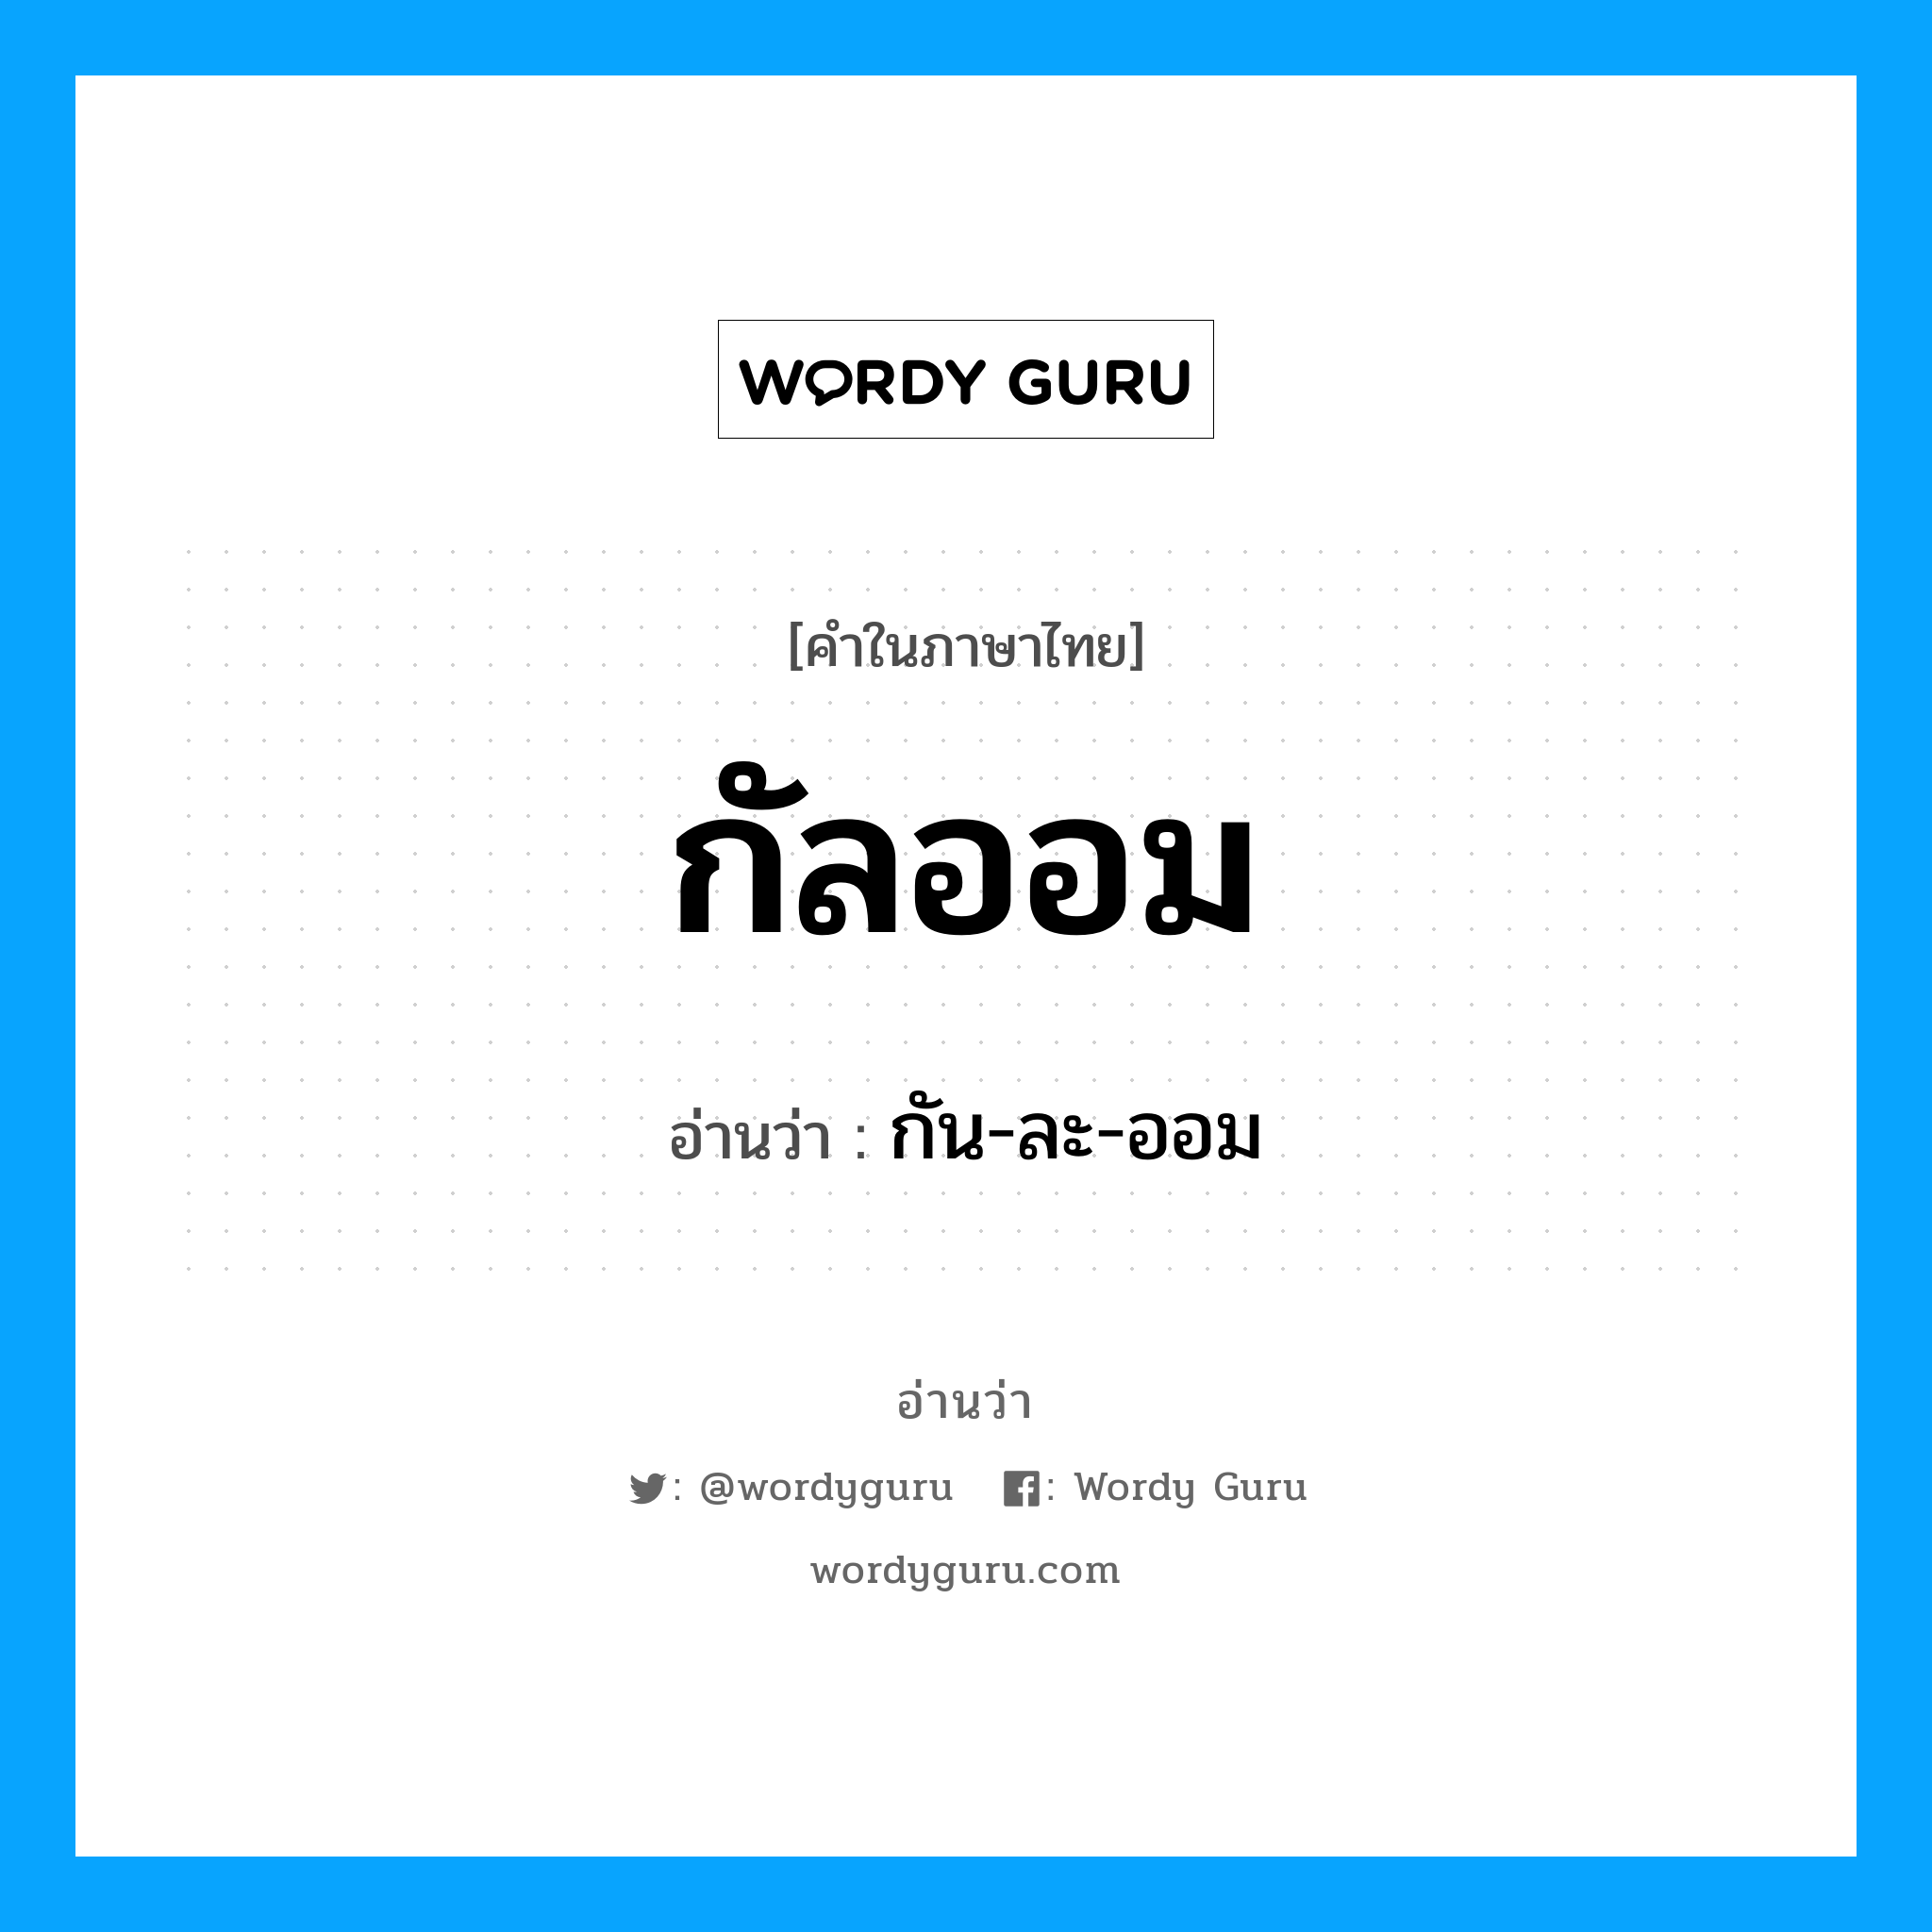 กัน-ละ-ออม เป็นคำอ่านของคำไหน?, คำในภาษาไทย กัน-ละ-ออม อ่านว่า กัลออม